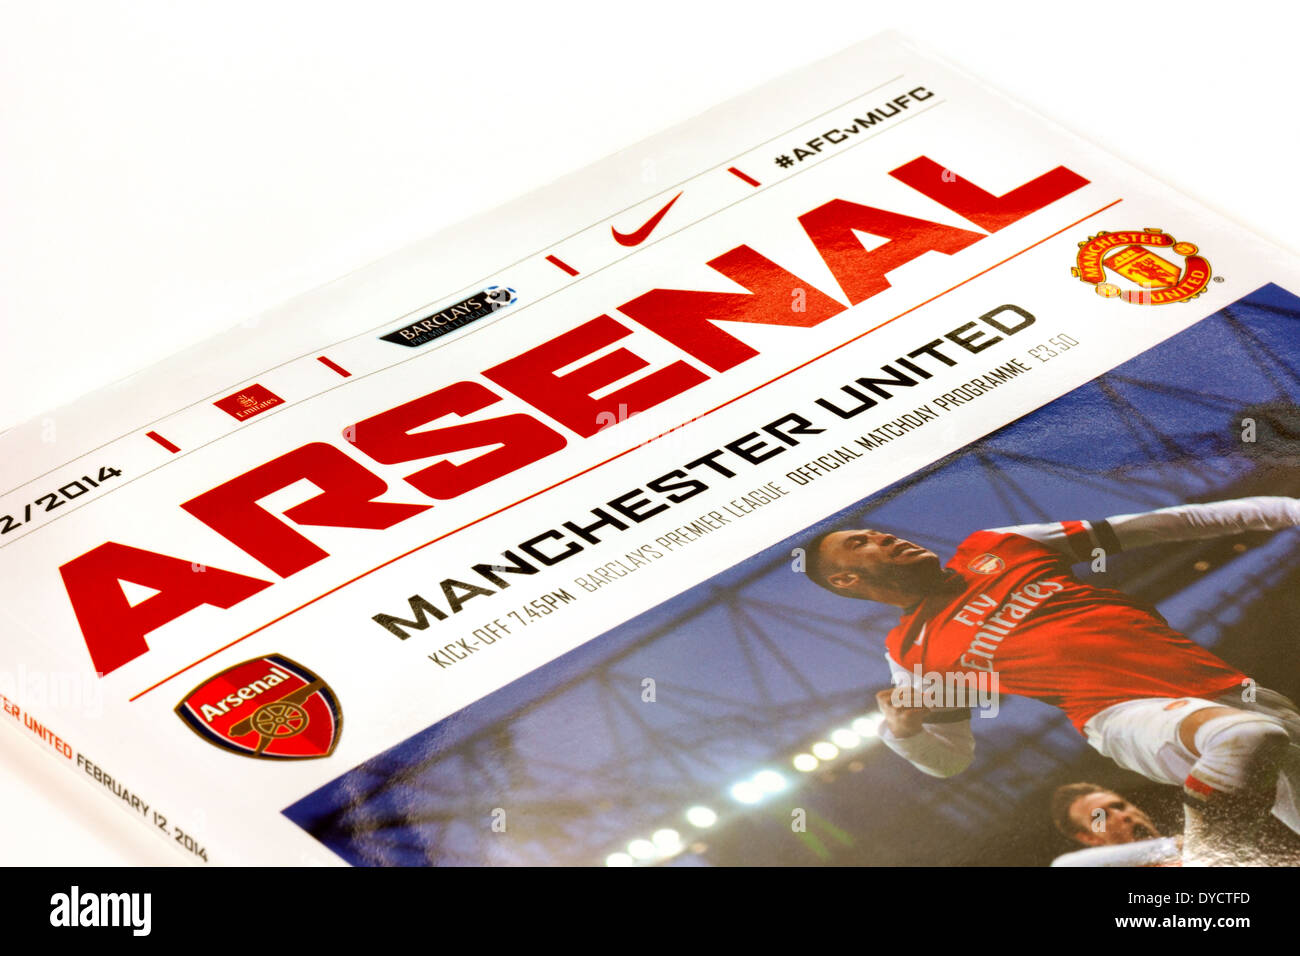 Arsenal vs Manchester United Premier League match de football programme de la saison de Premiership 2013-2014, Angleterre Banque D'Images